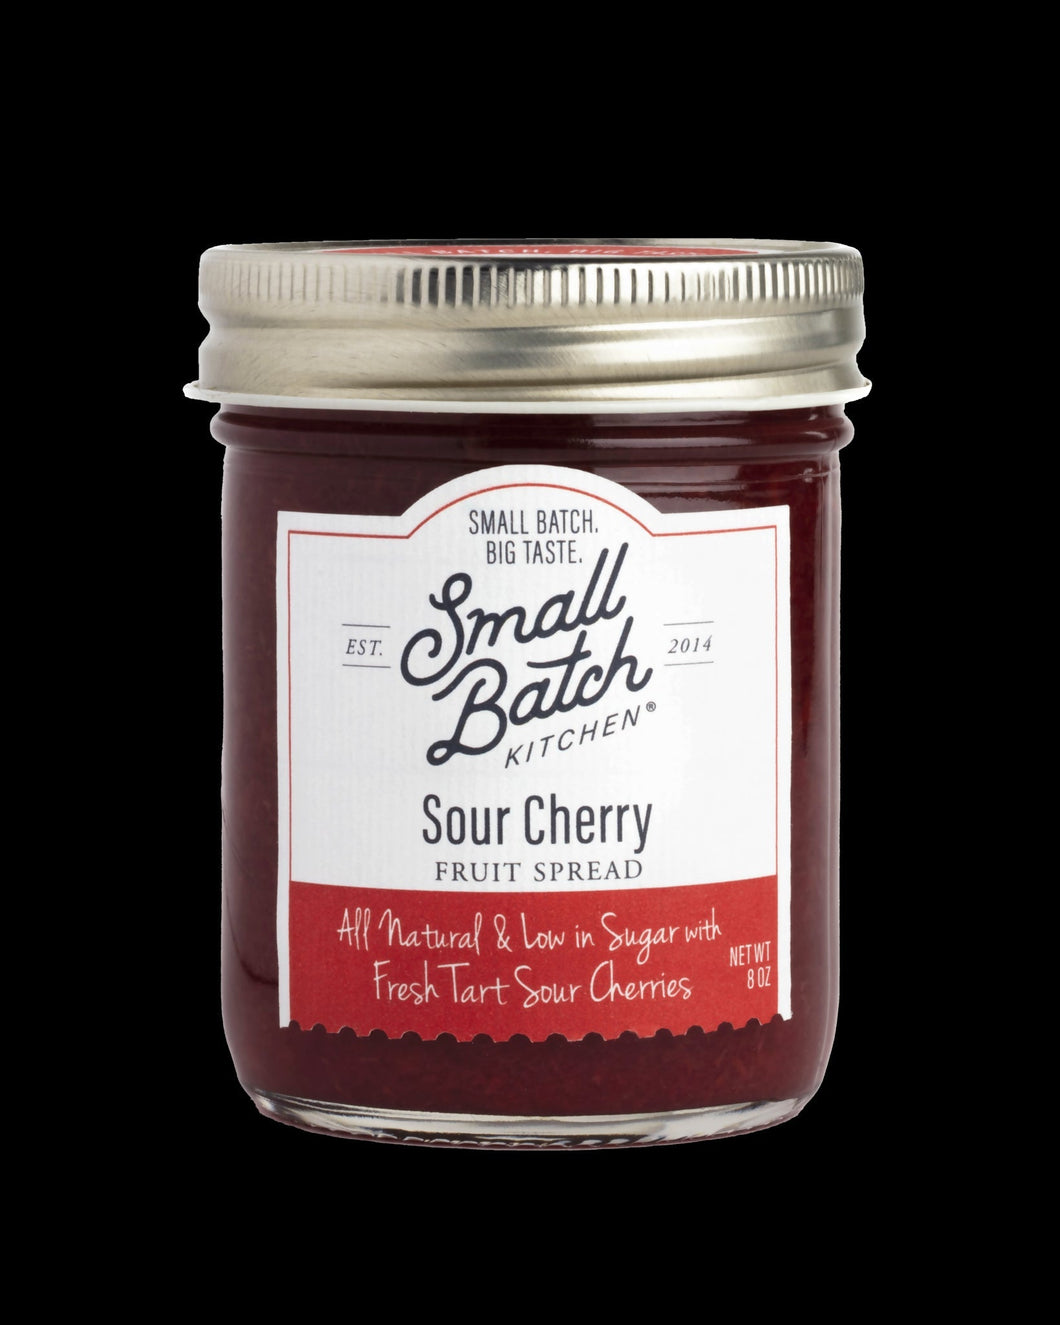 Small Batch Kitchen Sour Cherry Fruit Spread Jars - 12 jars x 8 oz